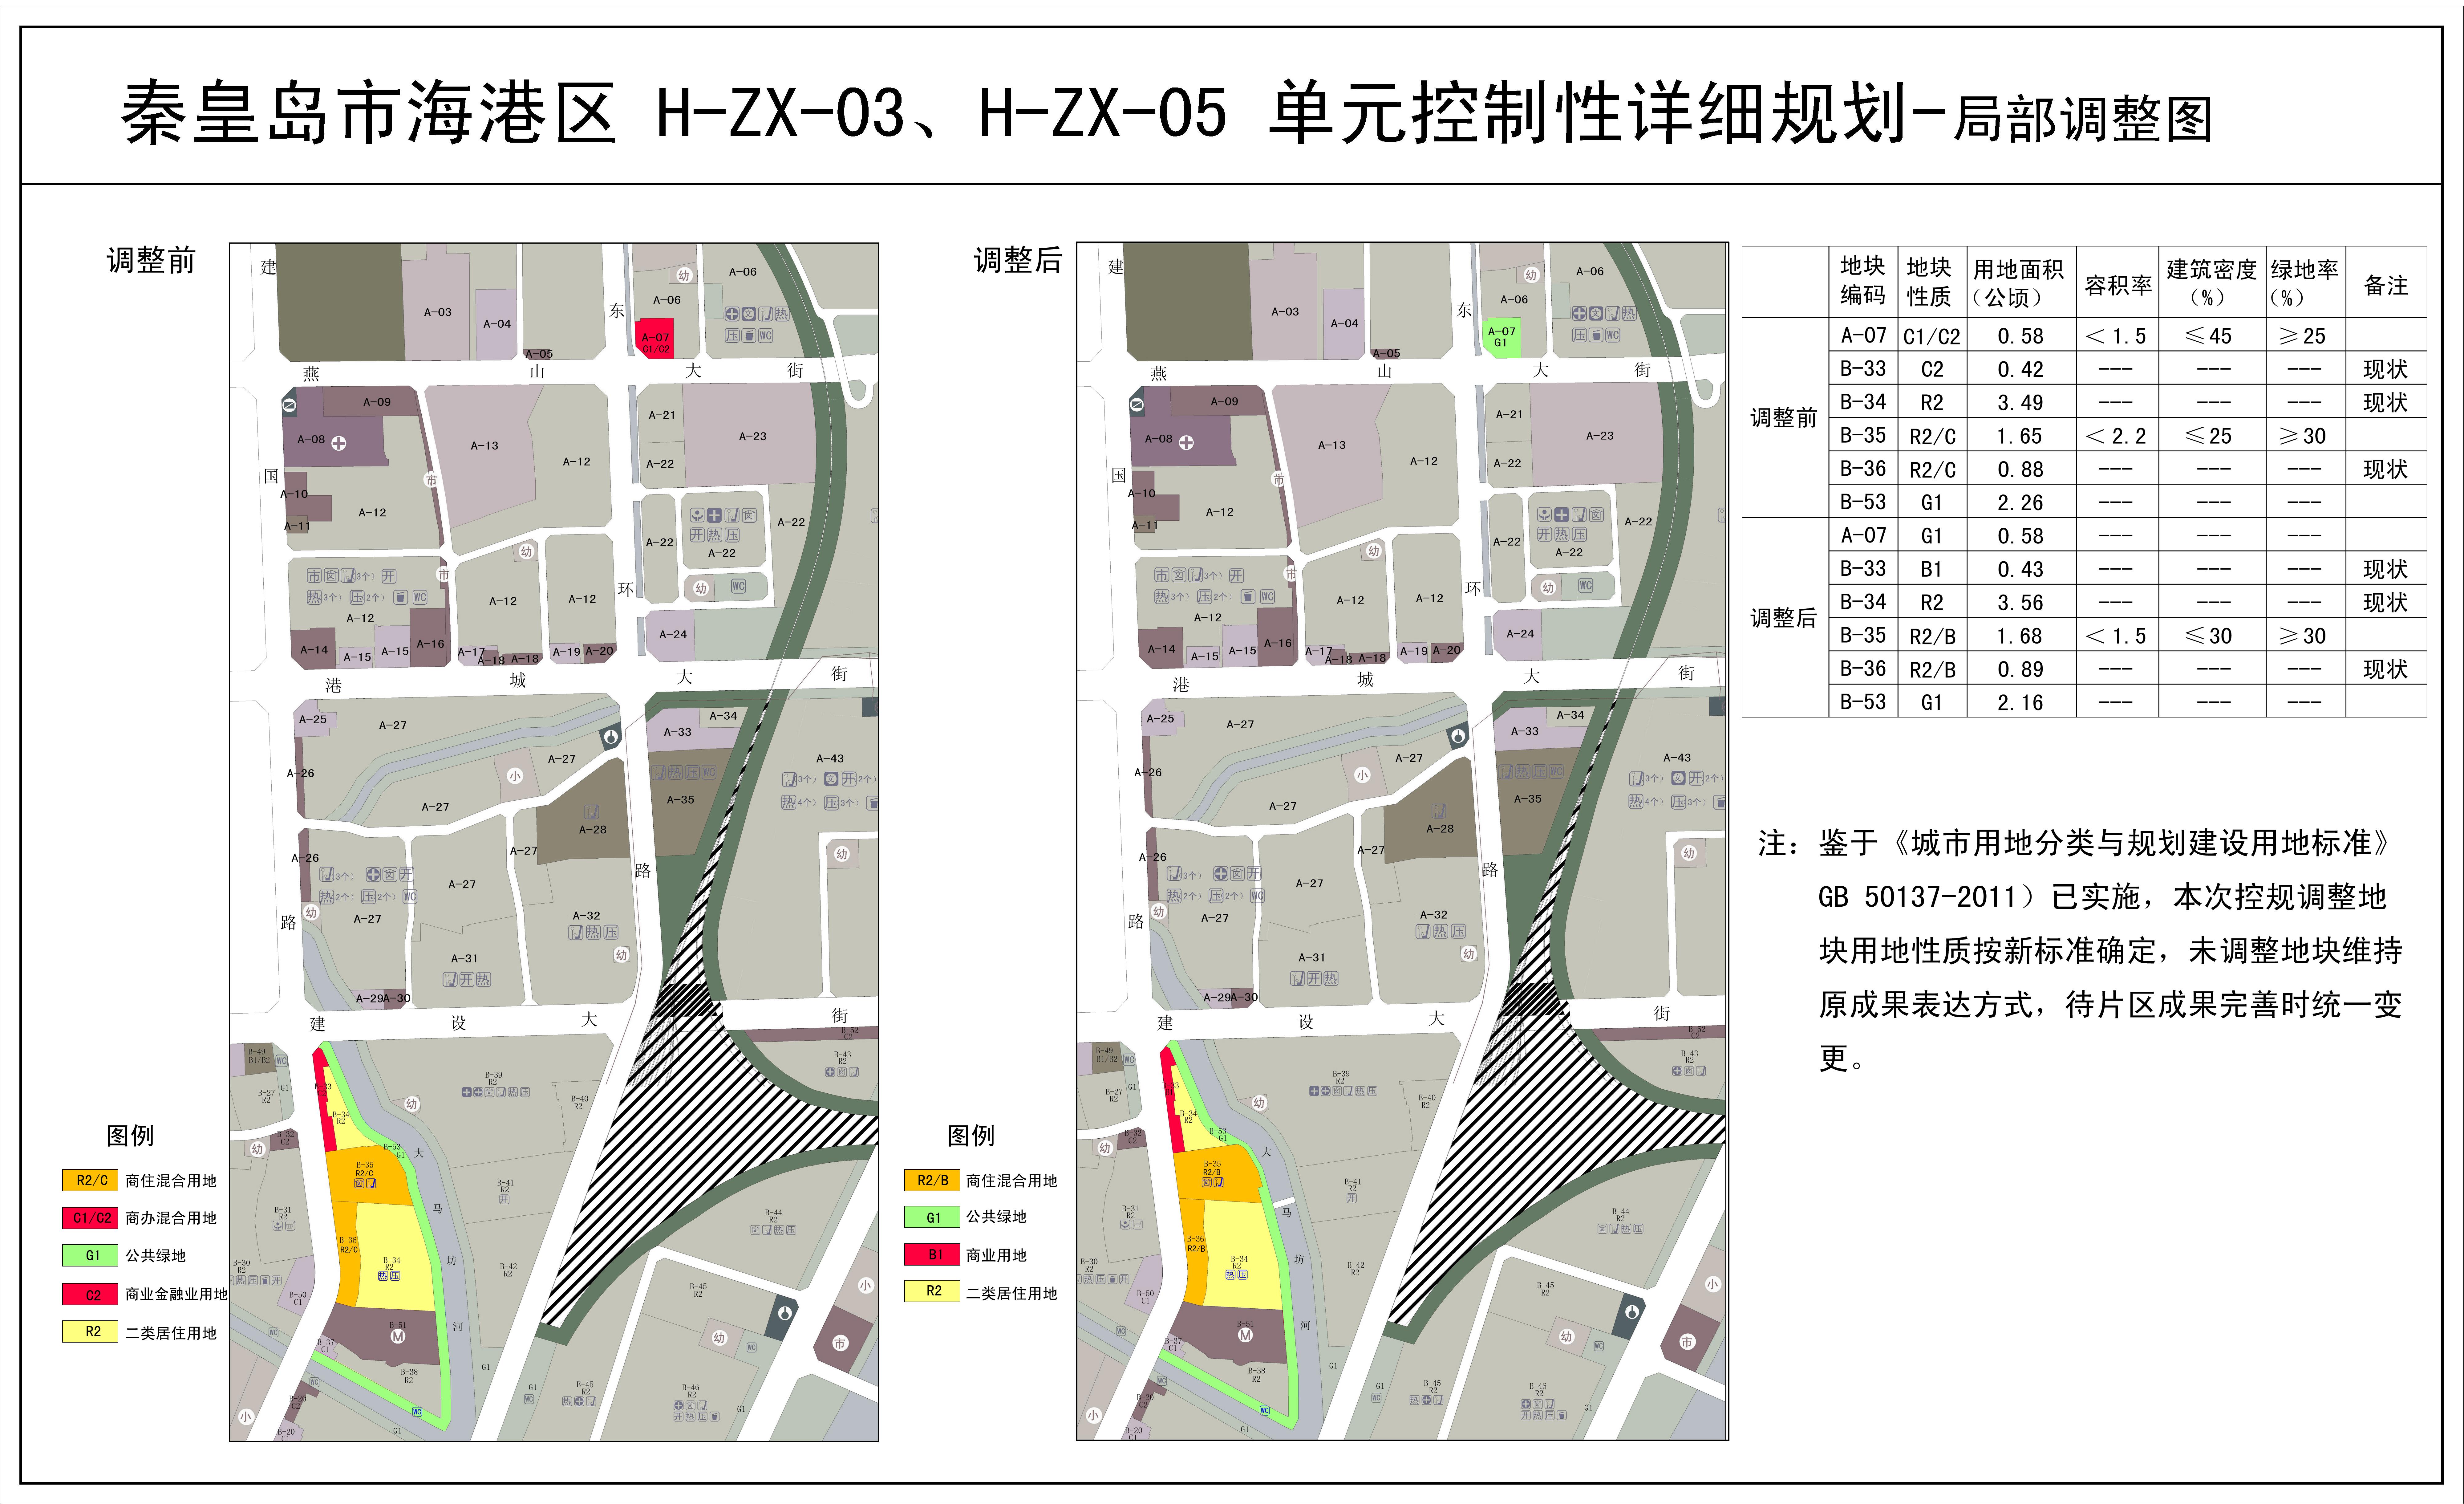 秦市海港区H-ZX-03、H-ZX-05单元规划局部调